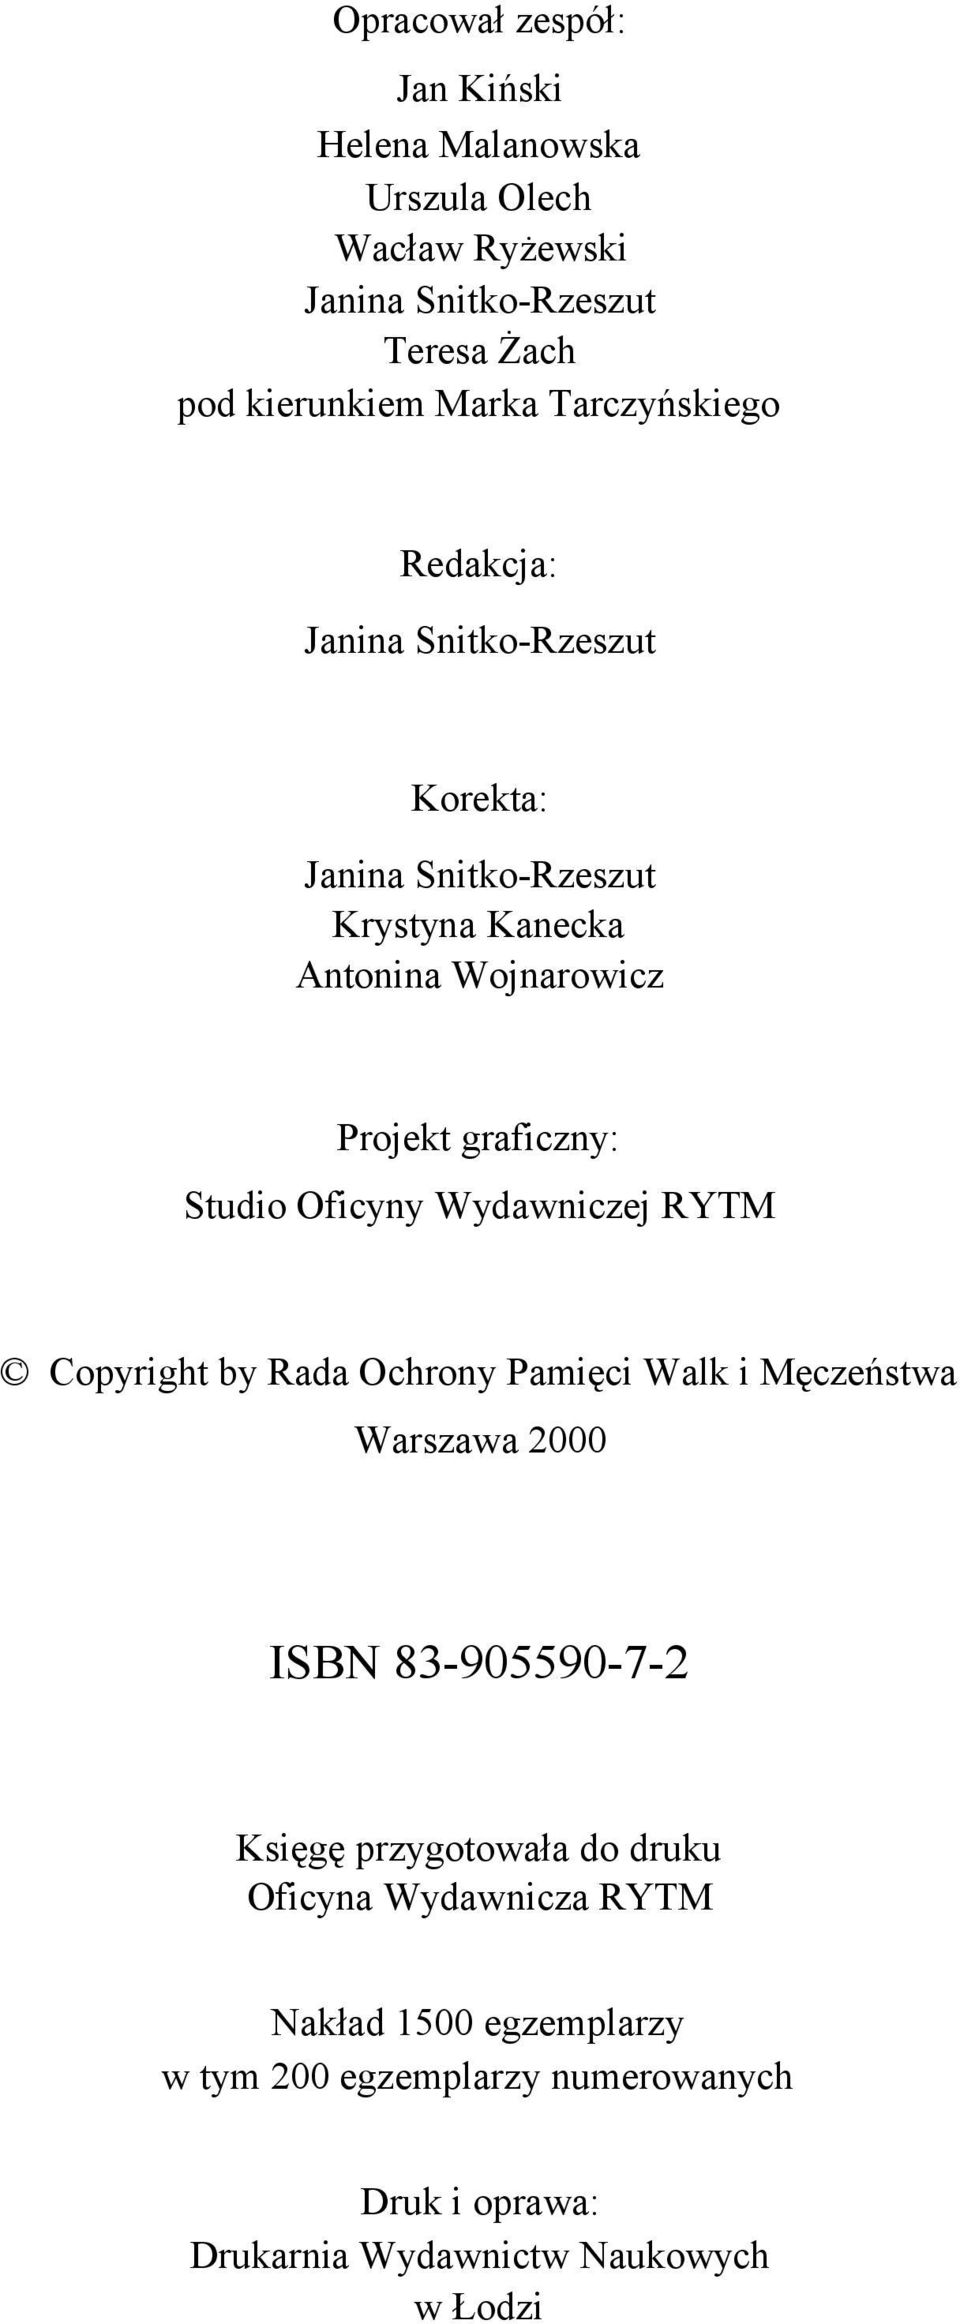 Studio Oficyny Wydawniczej RYTM Copyright by Rada Ochrony Pamięci Walk i Męczeństwa Warszawa 2000 ISBN 83-905590-7-2 Księgę przygotowała